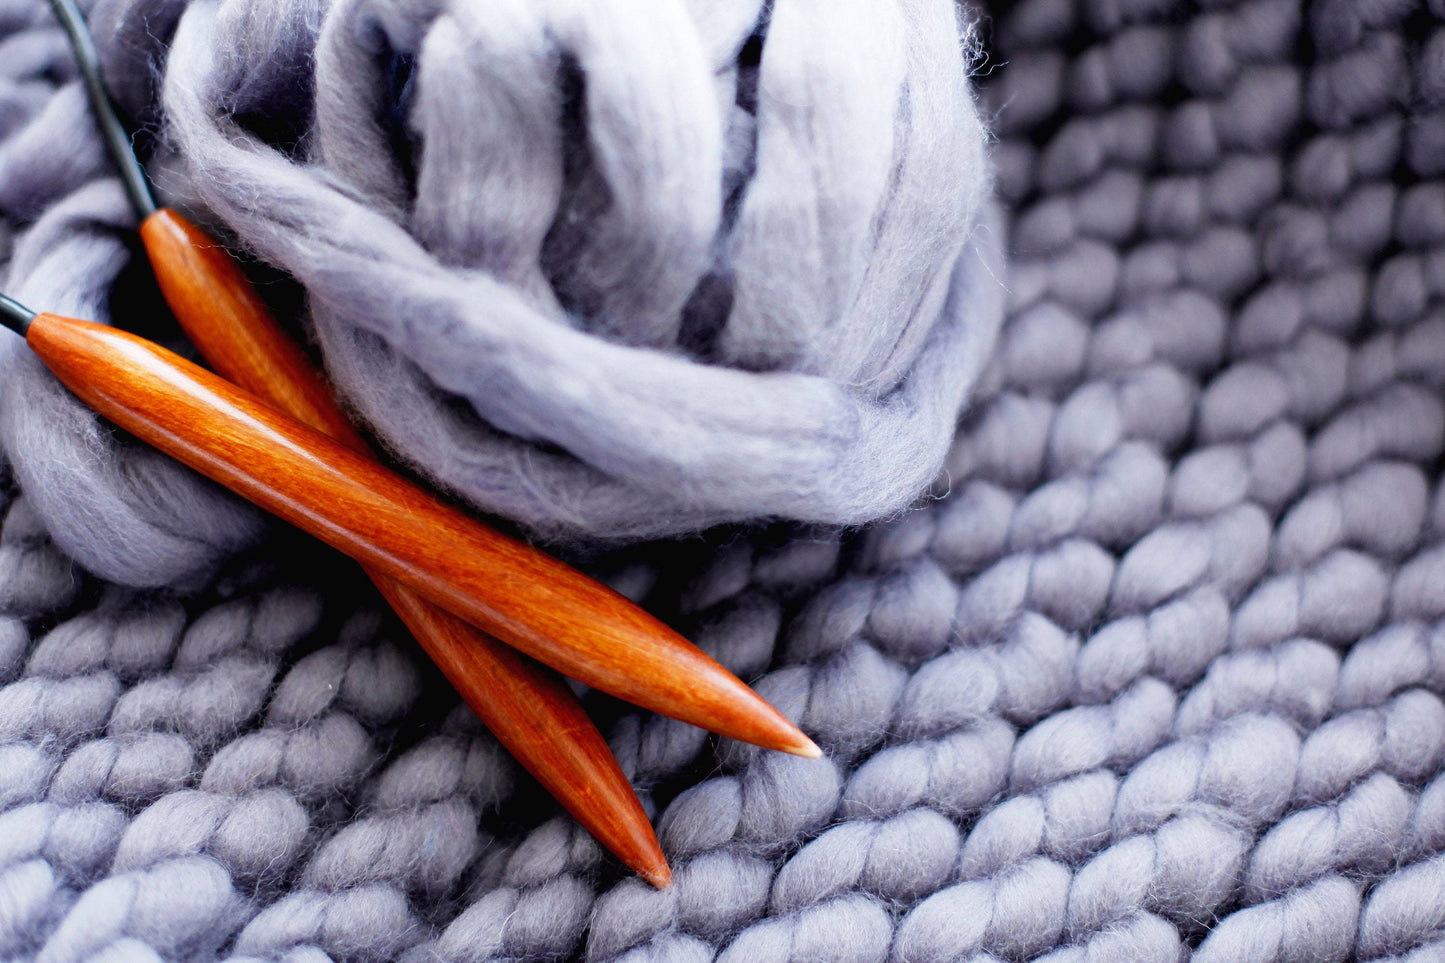 Chunky Yarn, Big Yarn, Chunky Knit Blanket Yarn DIY Arm Knitting Merino Wool Roving Yarn-Make your own Scarf, chunky Throw, Knit a Blanket